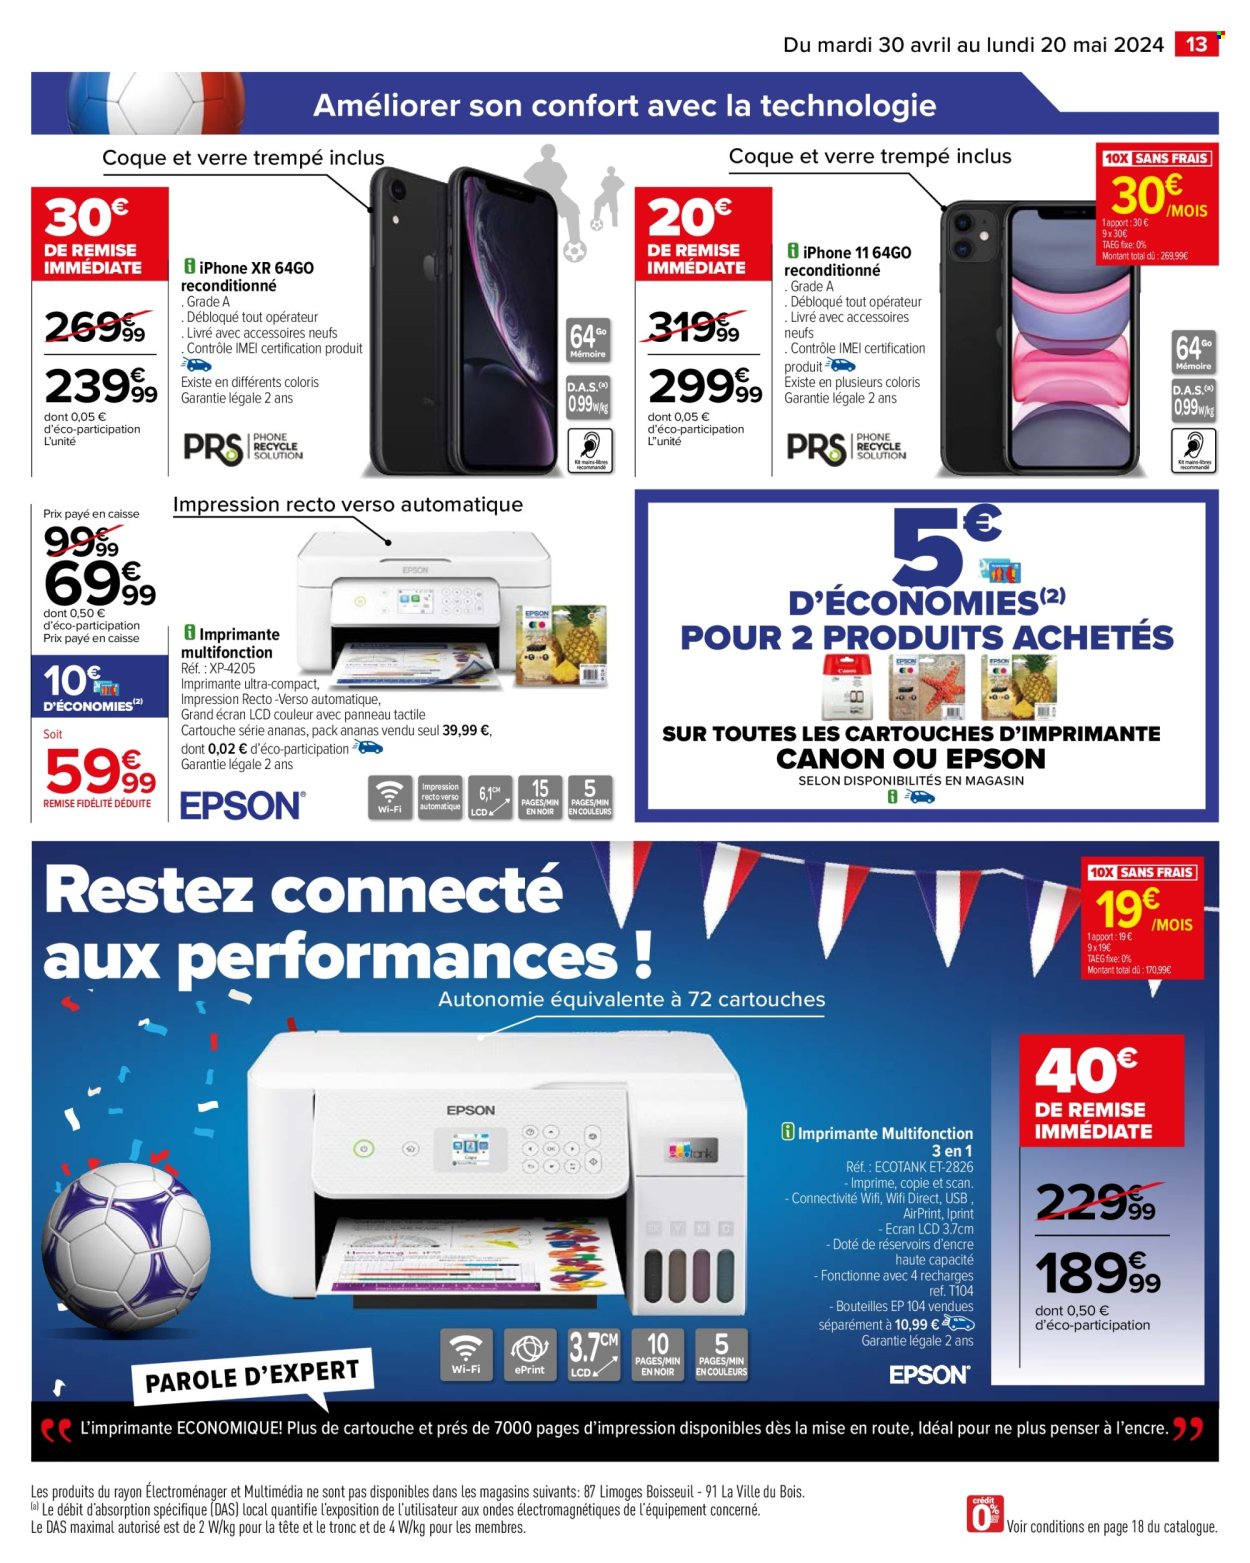 thumbnail - Catalogue Carrefour Hypermarchés - 30/04/2024 - 20/05/2024 - Produits soldés - iPhone, iPhone 11, smartphone, iPhone XR, Canon, Epson, imprimante, imprimante multifonctions. Page 15.